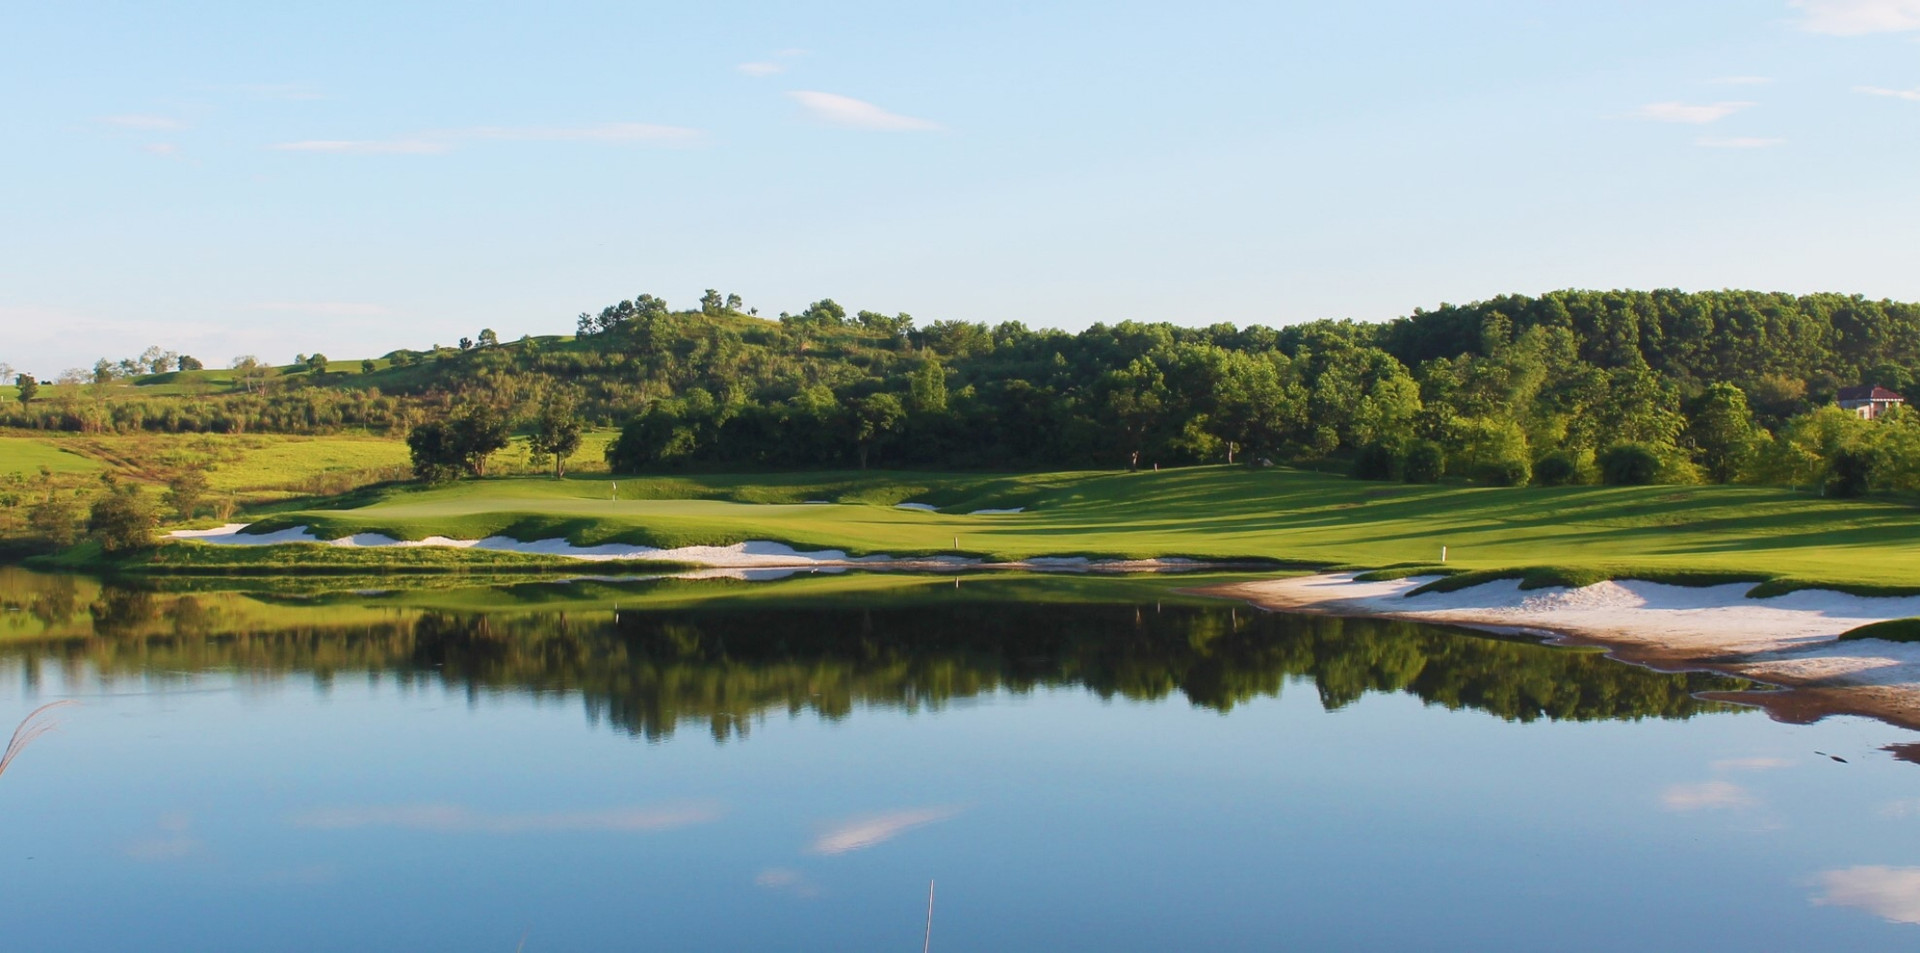 Sky Lake Resort & Golf Club: Sân golf 36 hố hàng đầu miền Bắc - Ảnh 2.